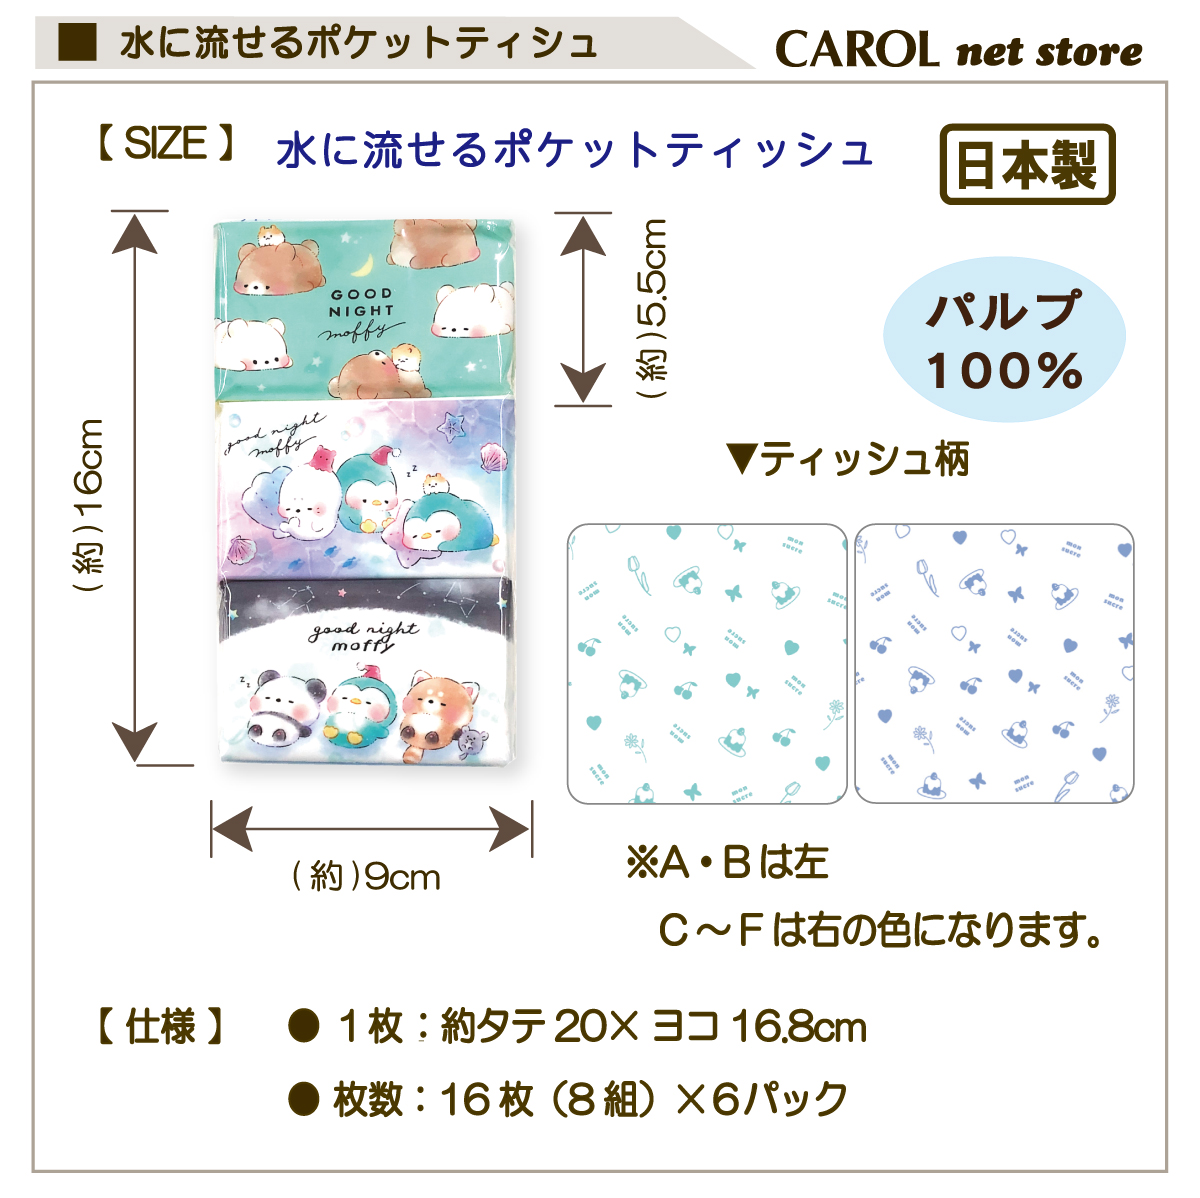  карман tishu6 шт упаковка животное Mini размер вода ....tishu soft ...... Pal p100% сделано в Японии входить . входить . новый . период почтовая доставка 